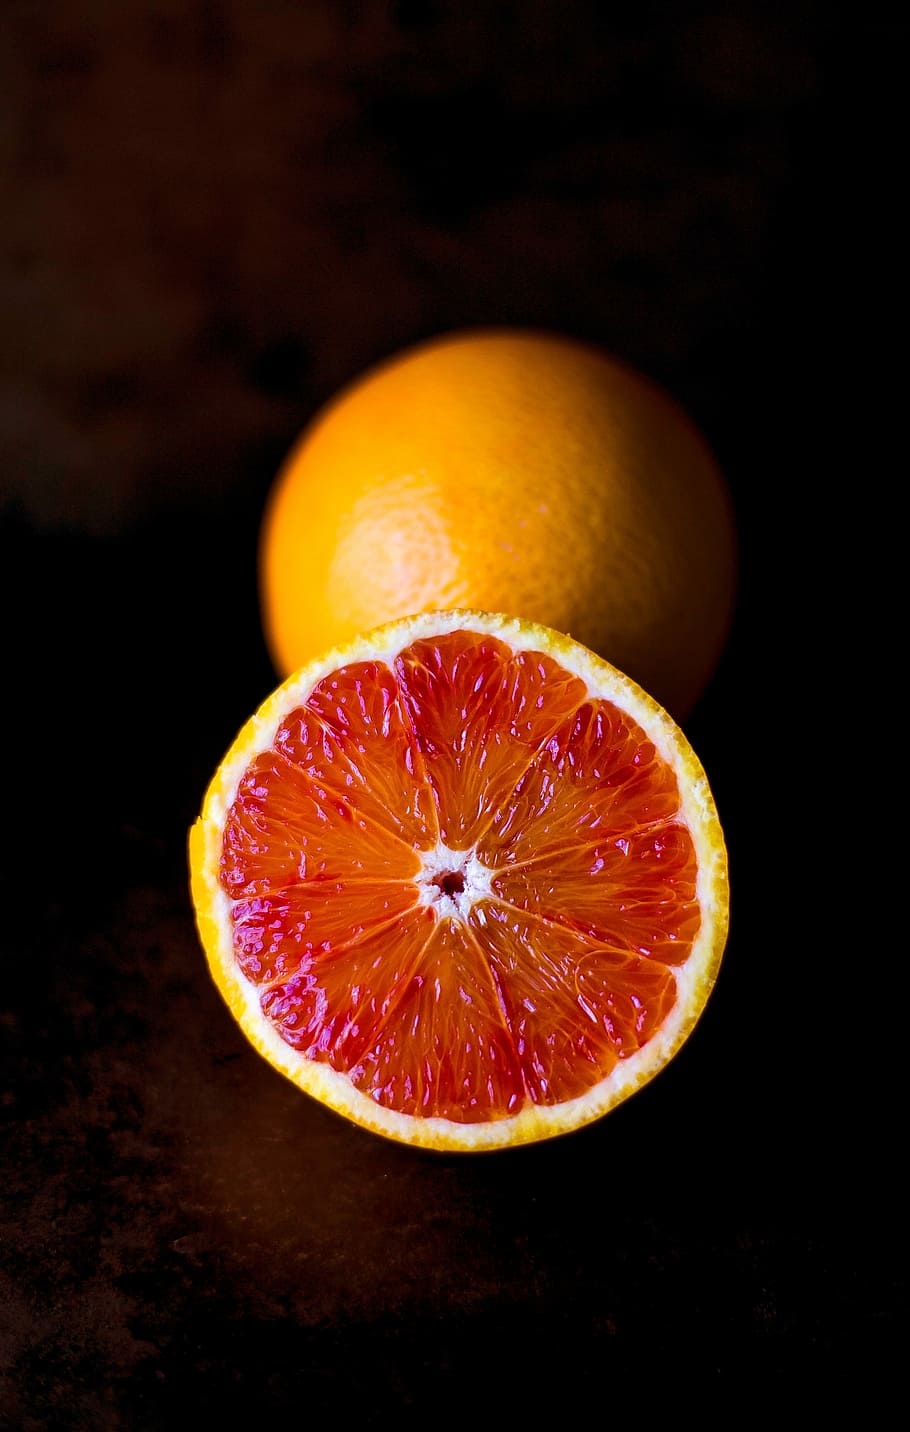 Blood orange, citrus, fruit, minimalistic, orange, red, simplistic, citrus Fruit, food, freshness